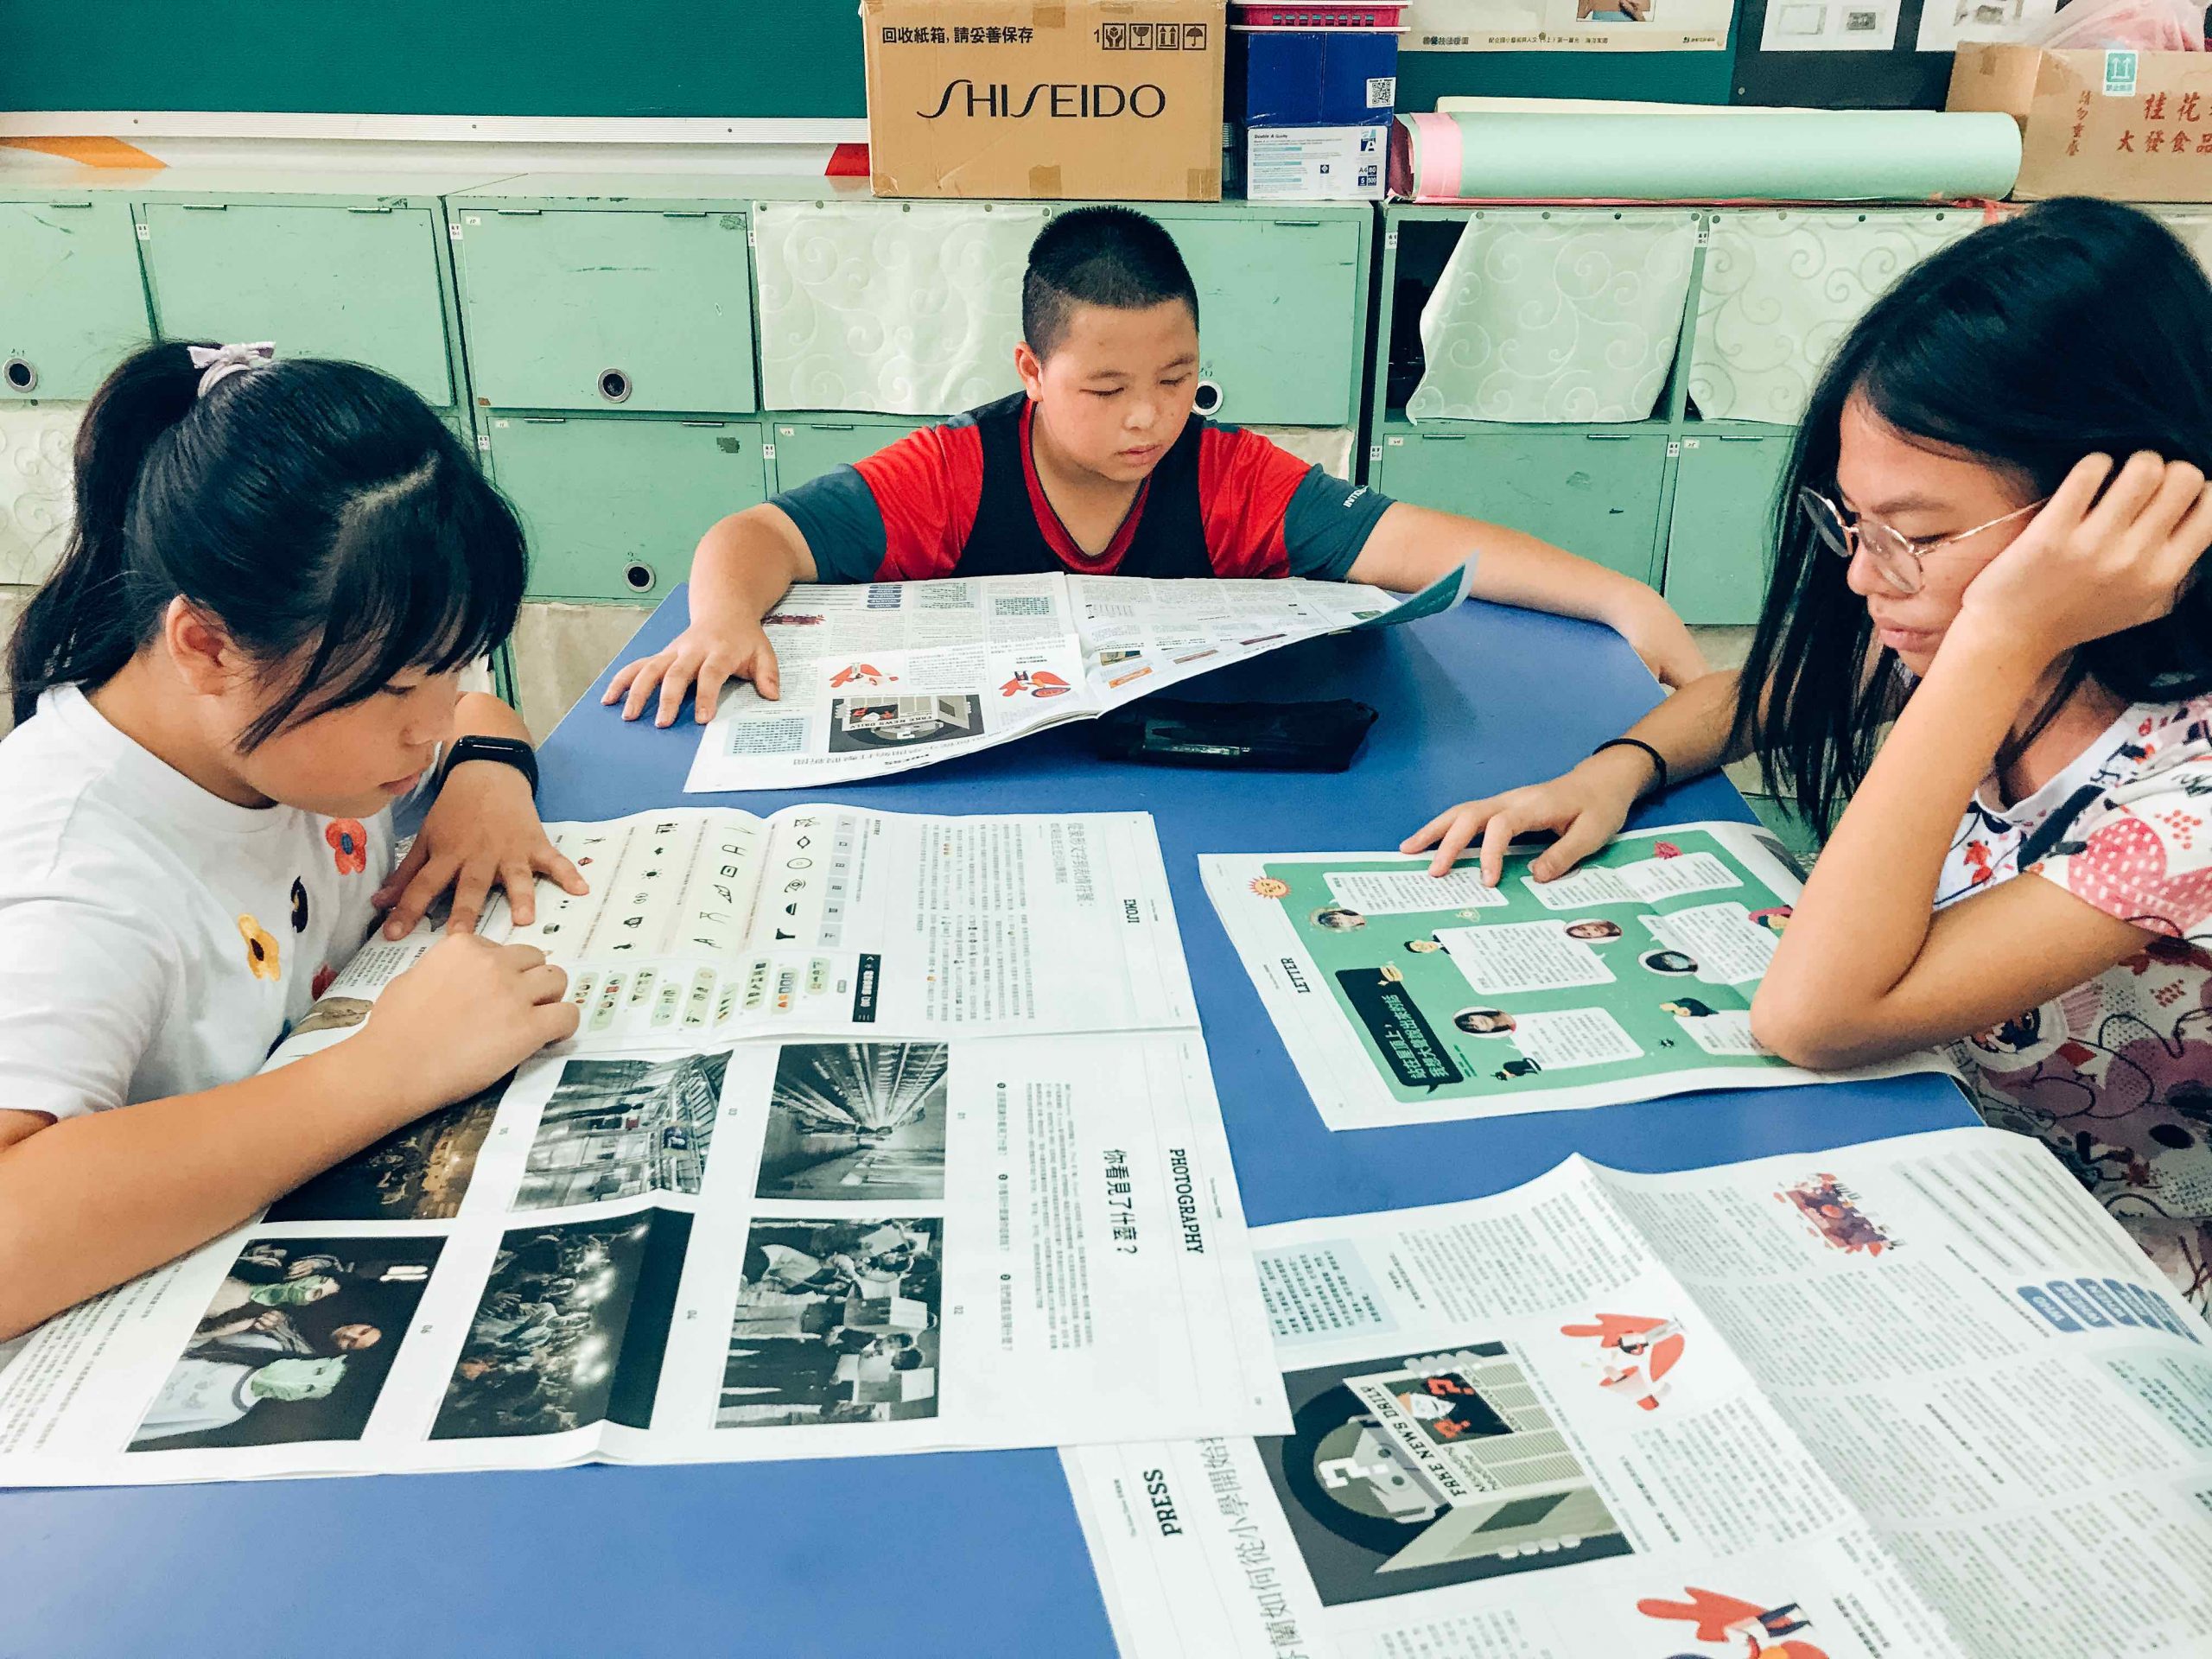 兩名女同學以及一名男同學在藍色桌子上閱讀安妮新聞報紙。